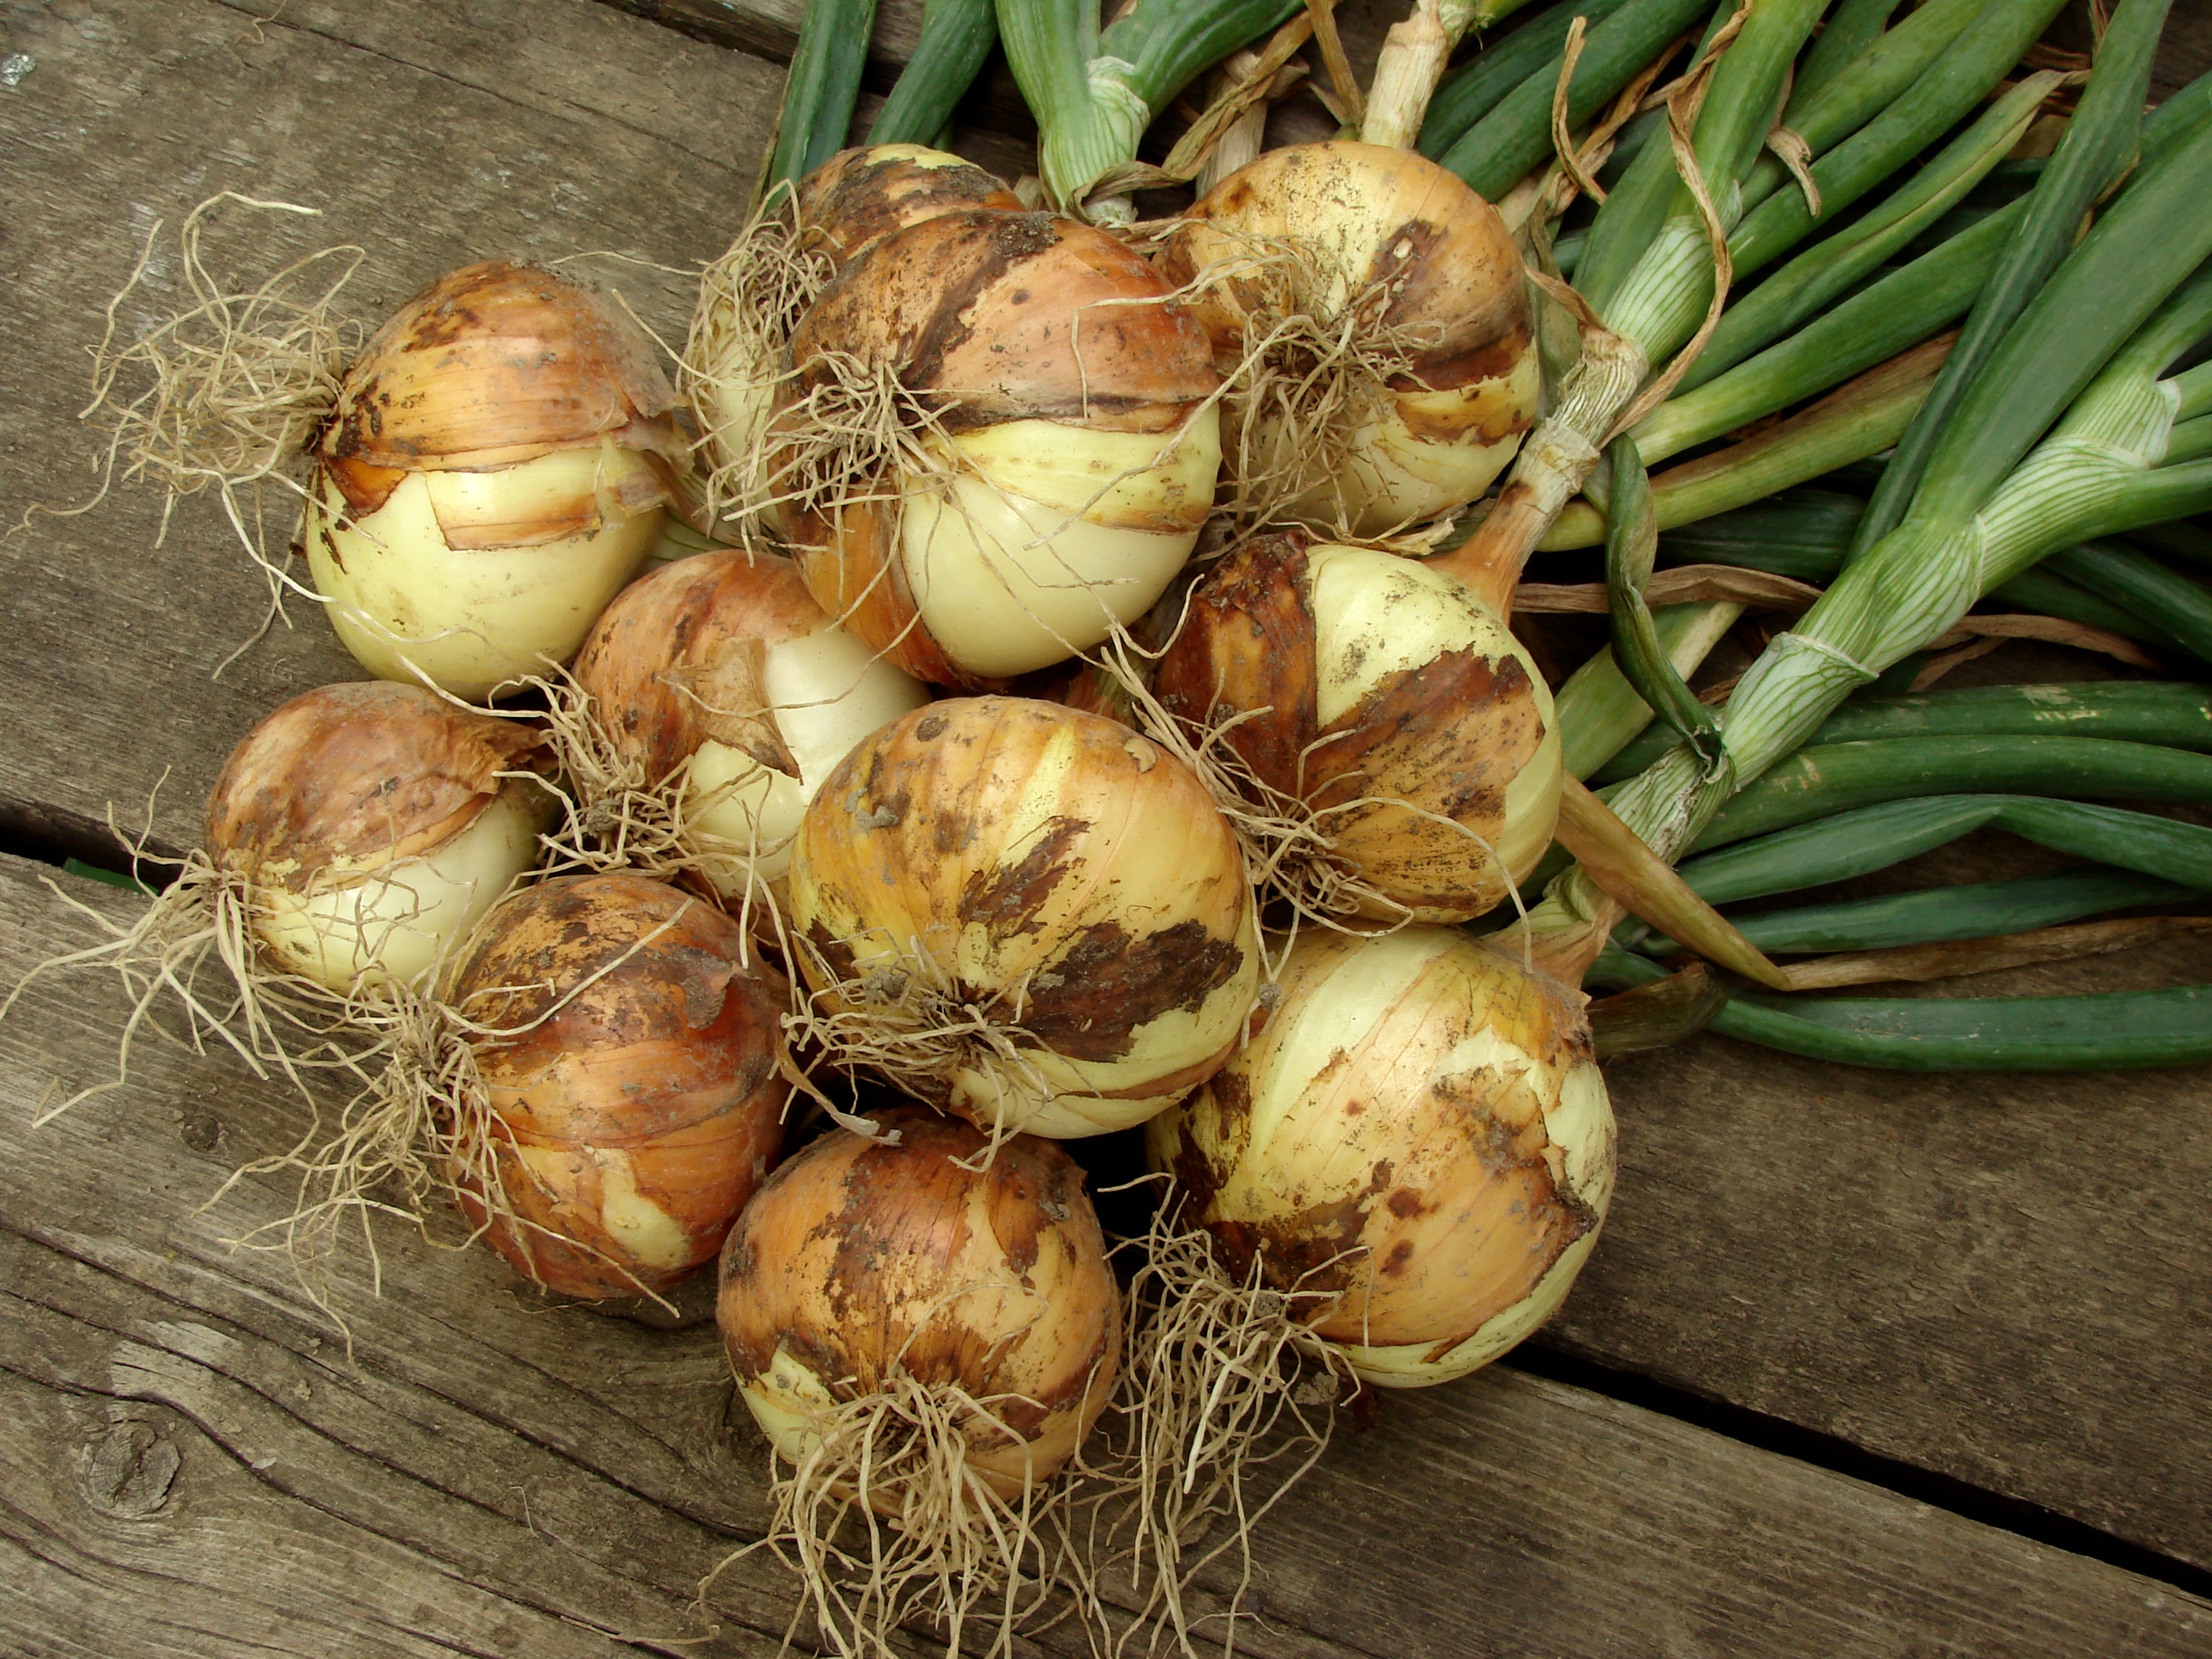 Mixed Red White & Yellow Onion Sets 1 Lb. Non-GMO